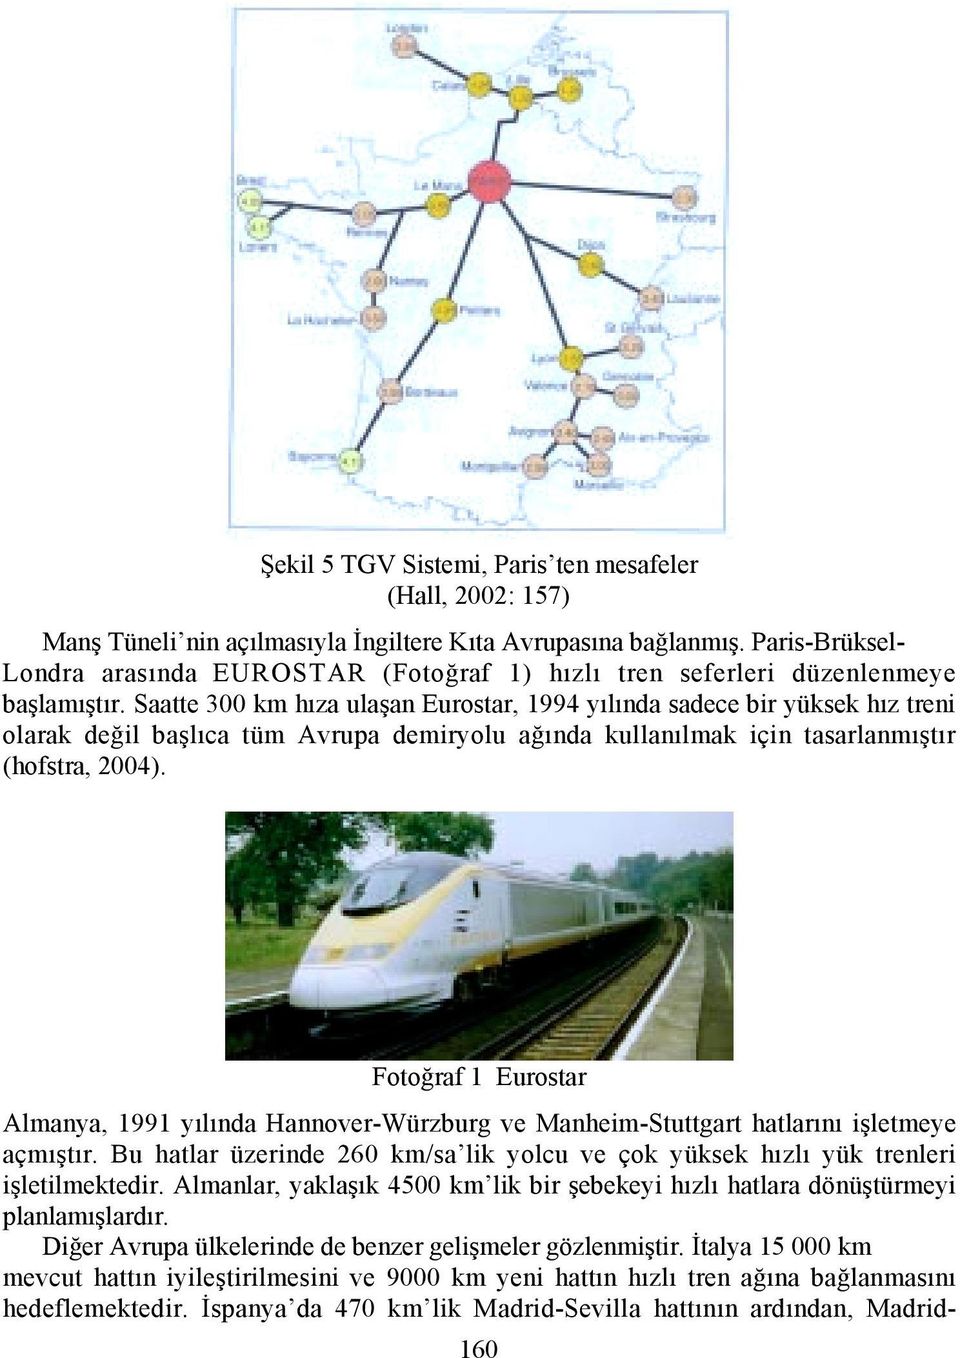 Saatte 300 km hõza ulaşan Eurostar, 1994 yõlõnda sadece bir yüksek hõz treni olarak değil başlõca tüm Avrupa demiryolu ağõnda kullanõlmak için tasarlanmõştõr (hofstra, 2004).